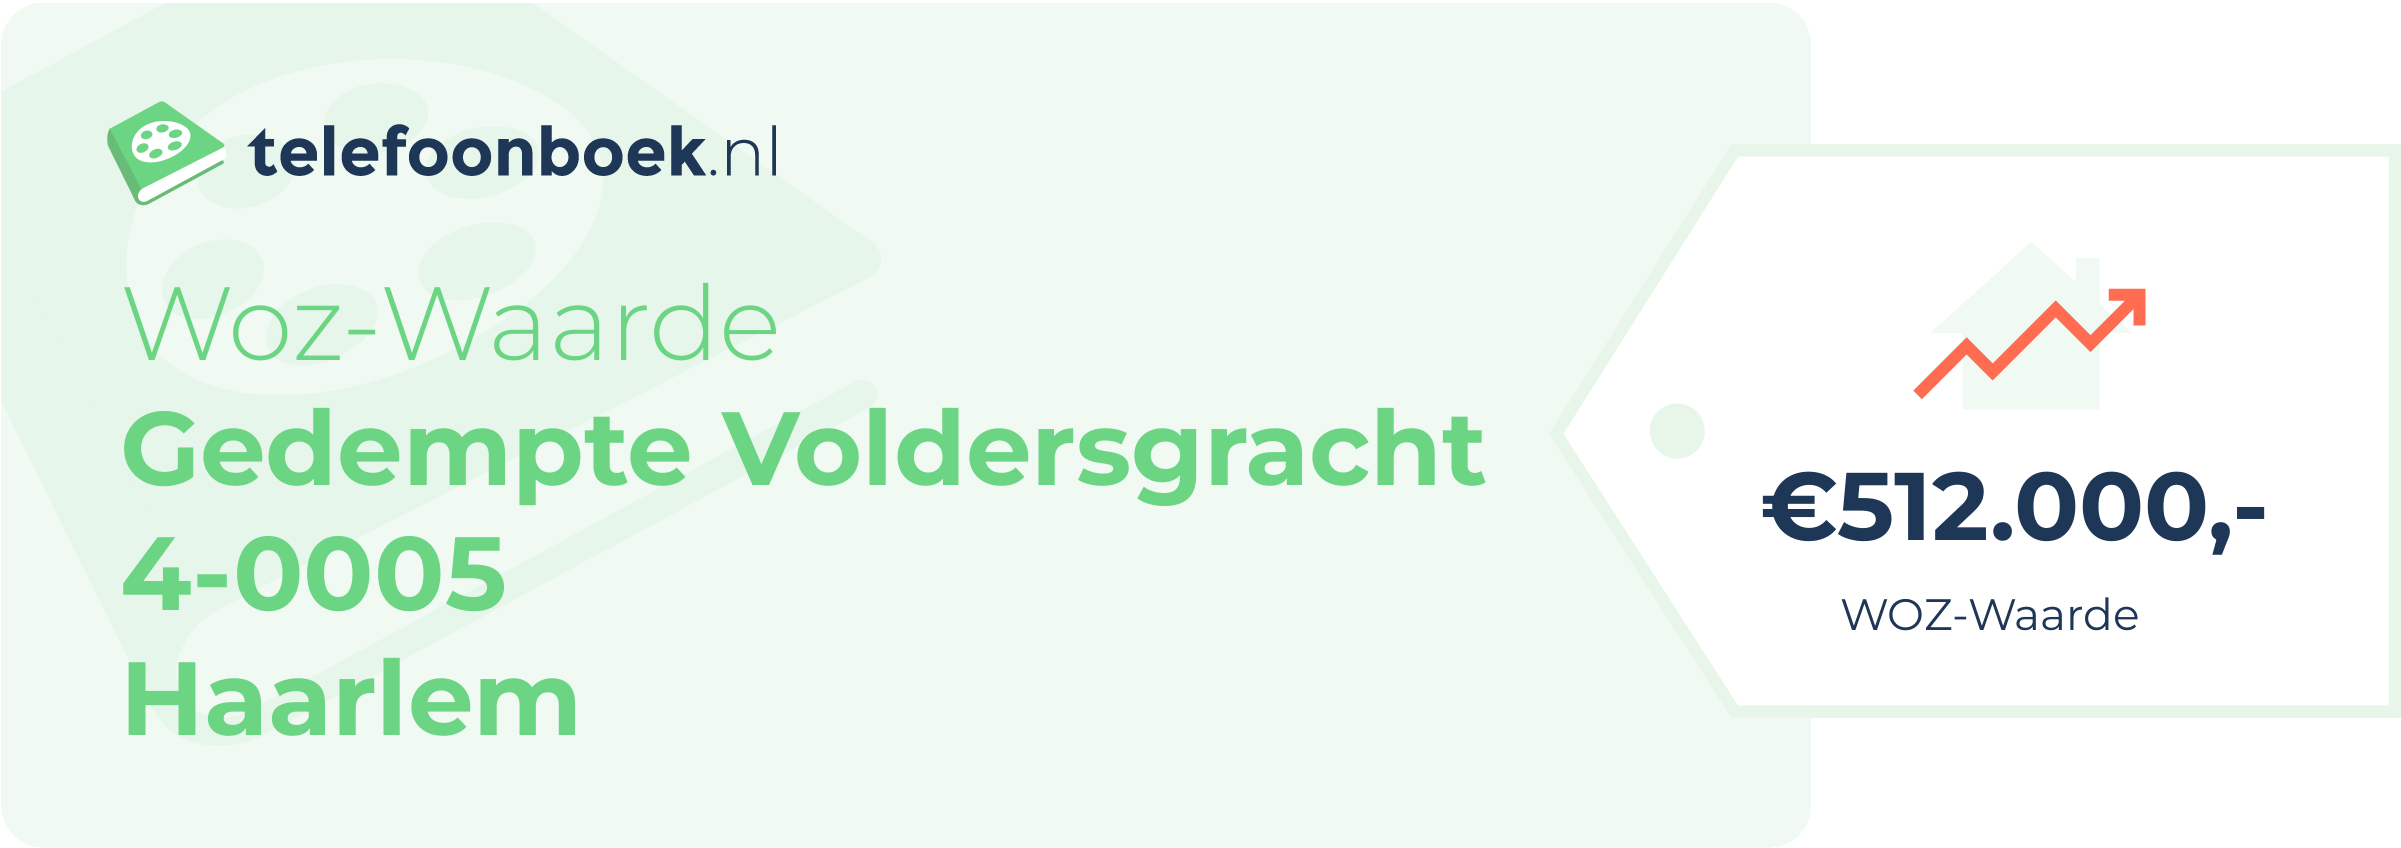 WOZ-waarde Gedempte Voldersgracht 4-0005 Haarlem